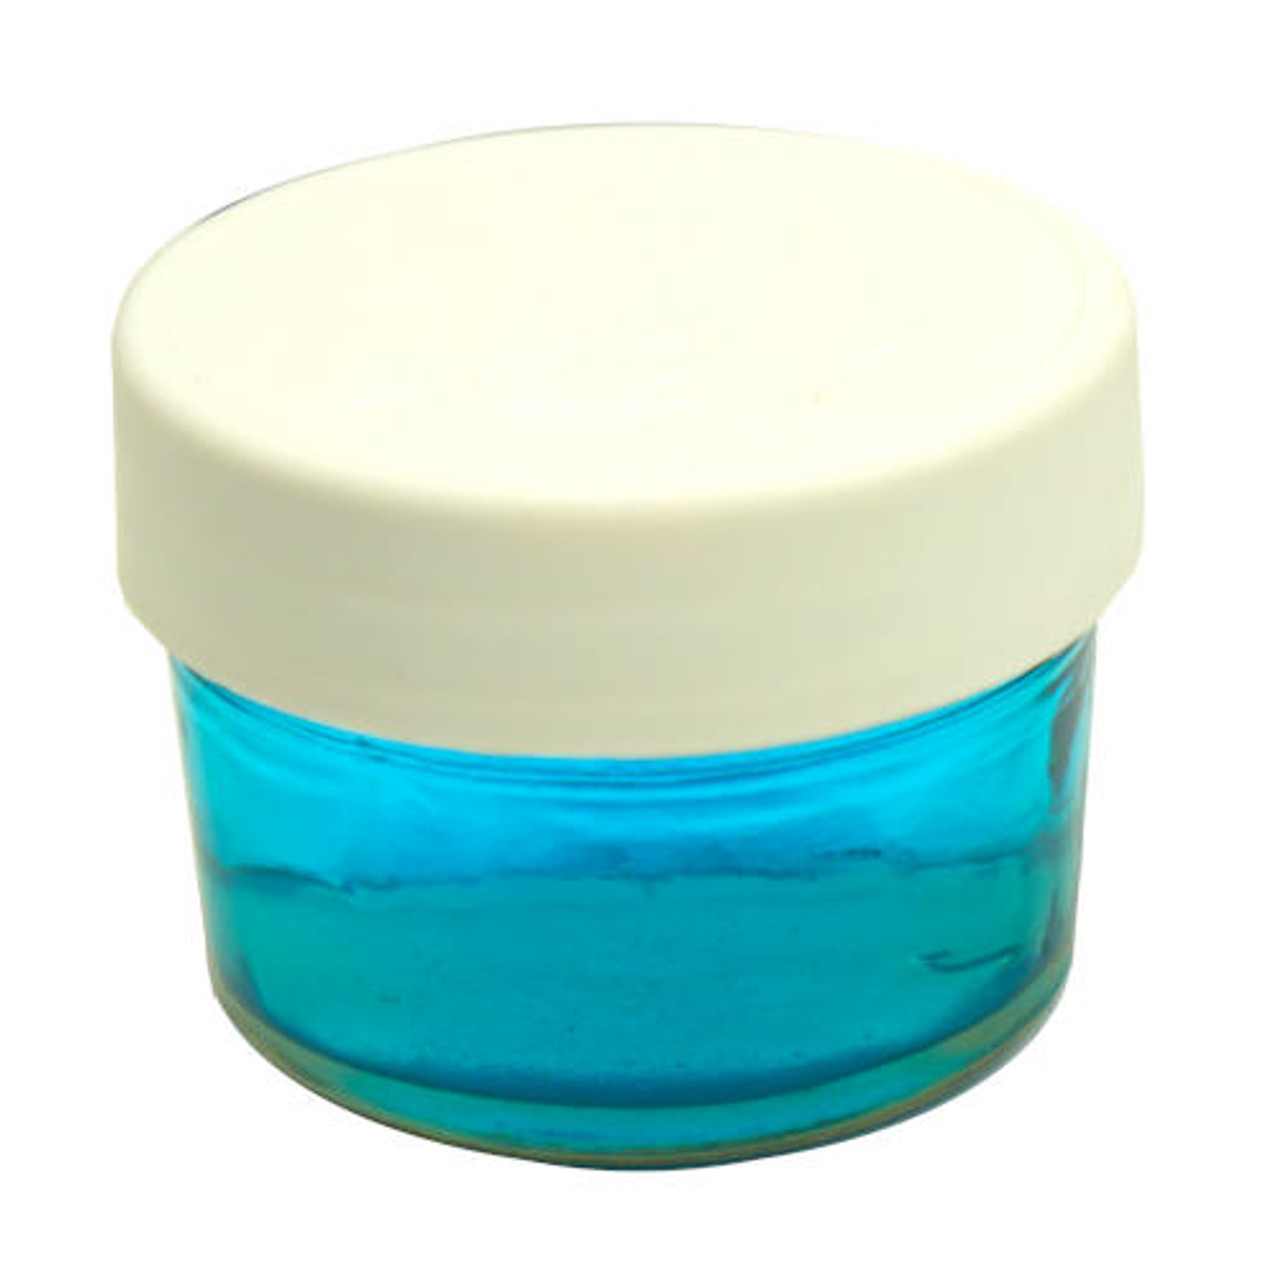 8 Pack Clear 12 oz Plastic Jars with Lids, Jars for Slime for Kids DIY  Crafts